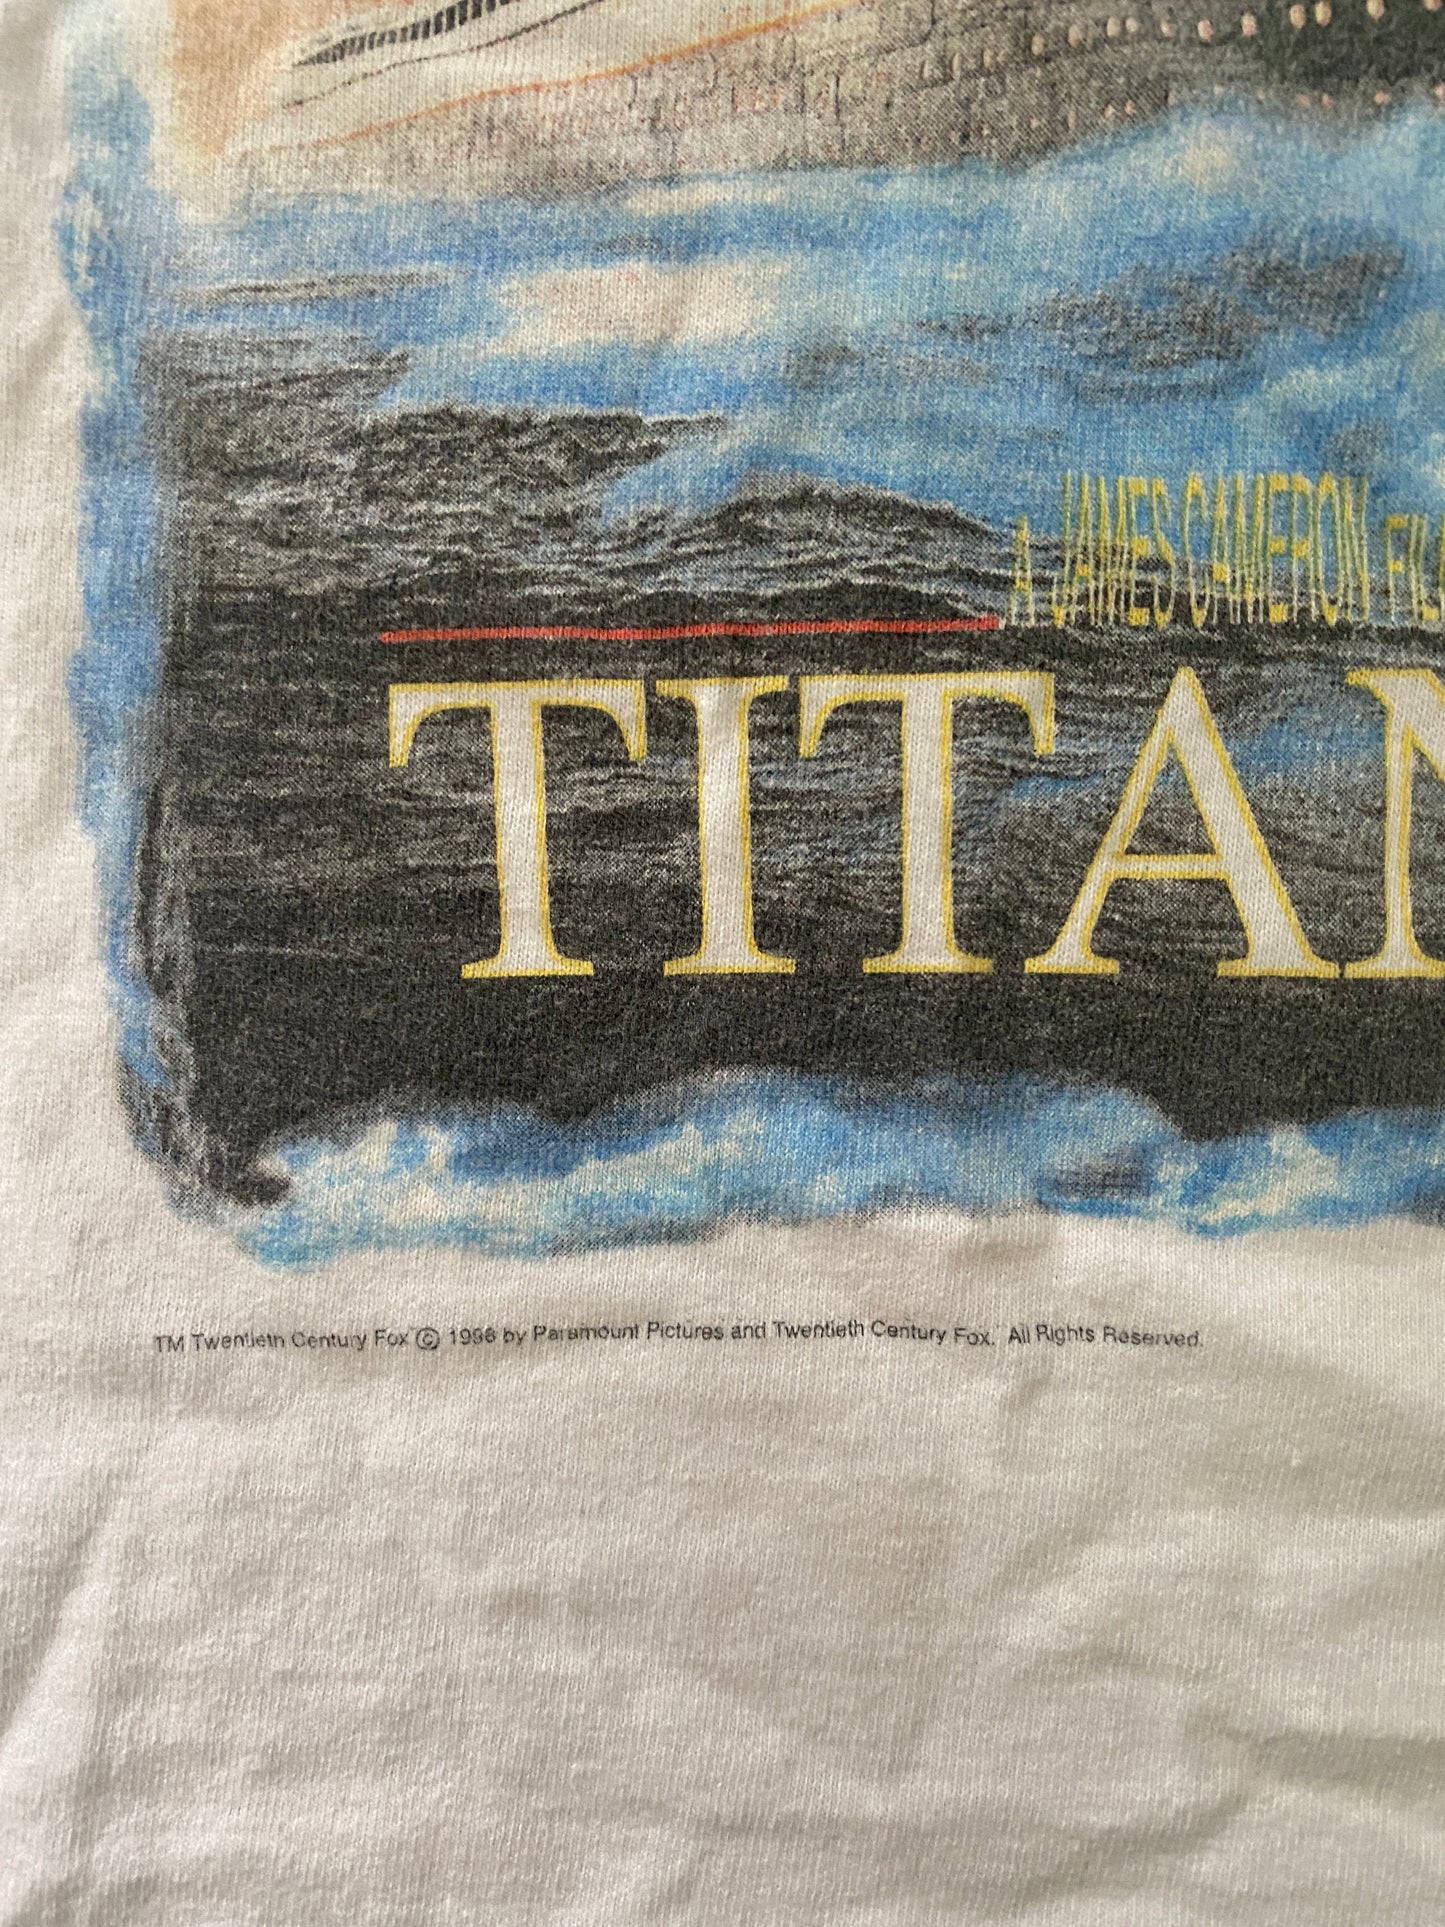 Titanic 1998 T-shirt